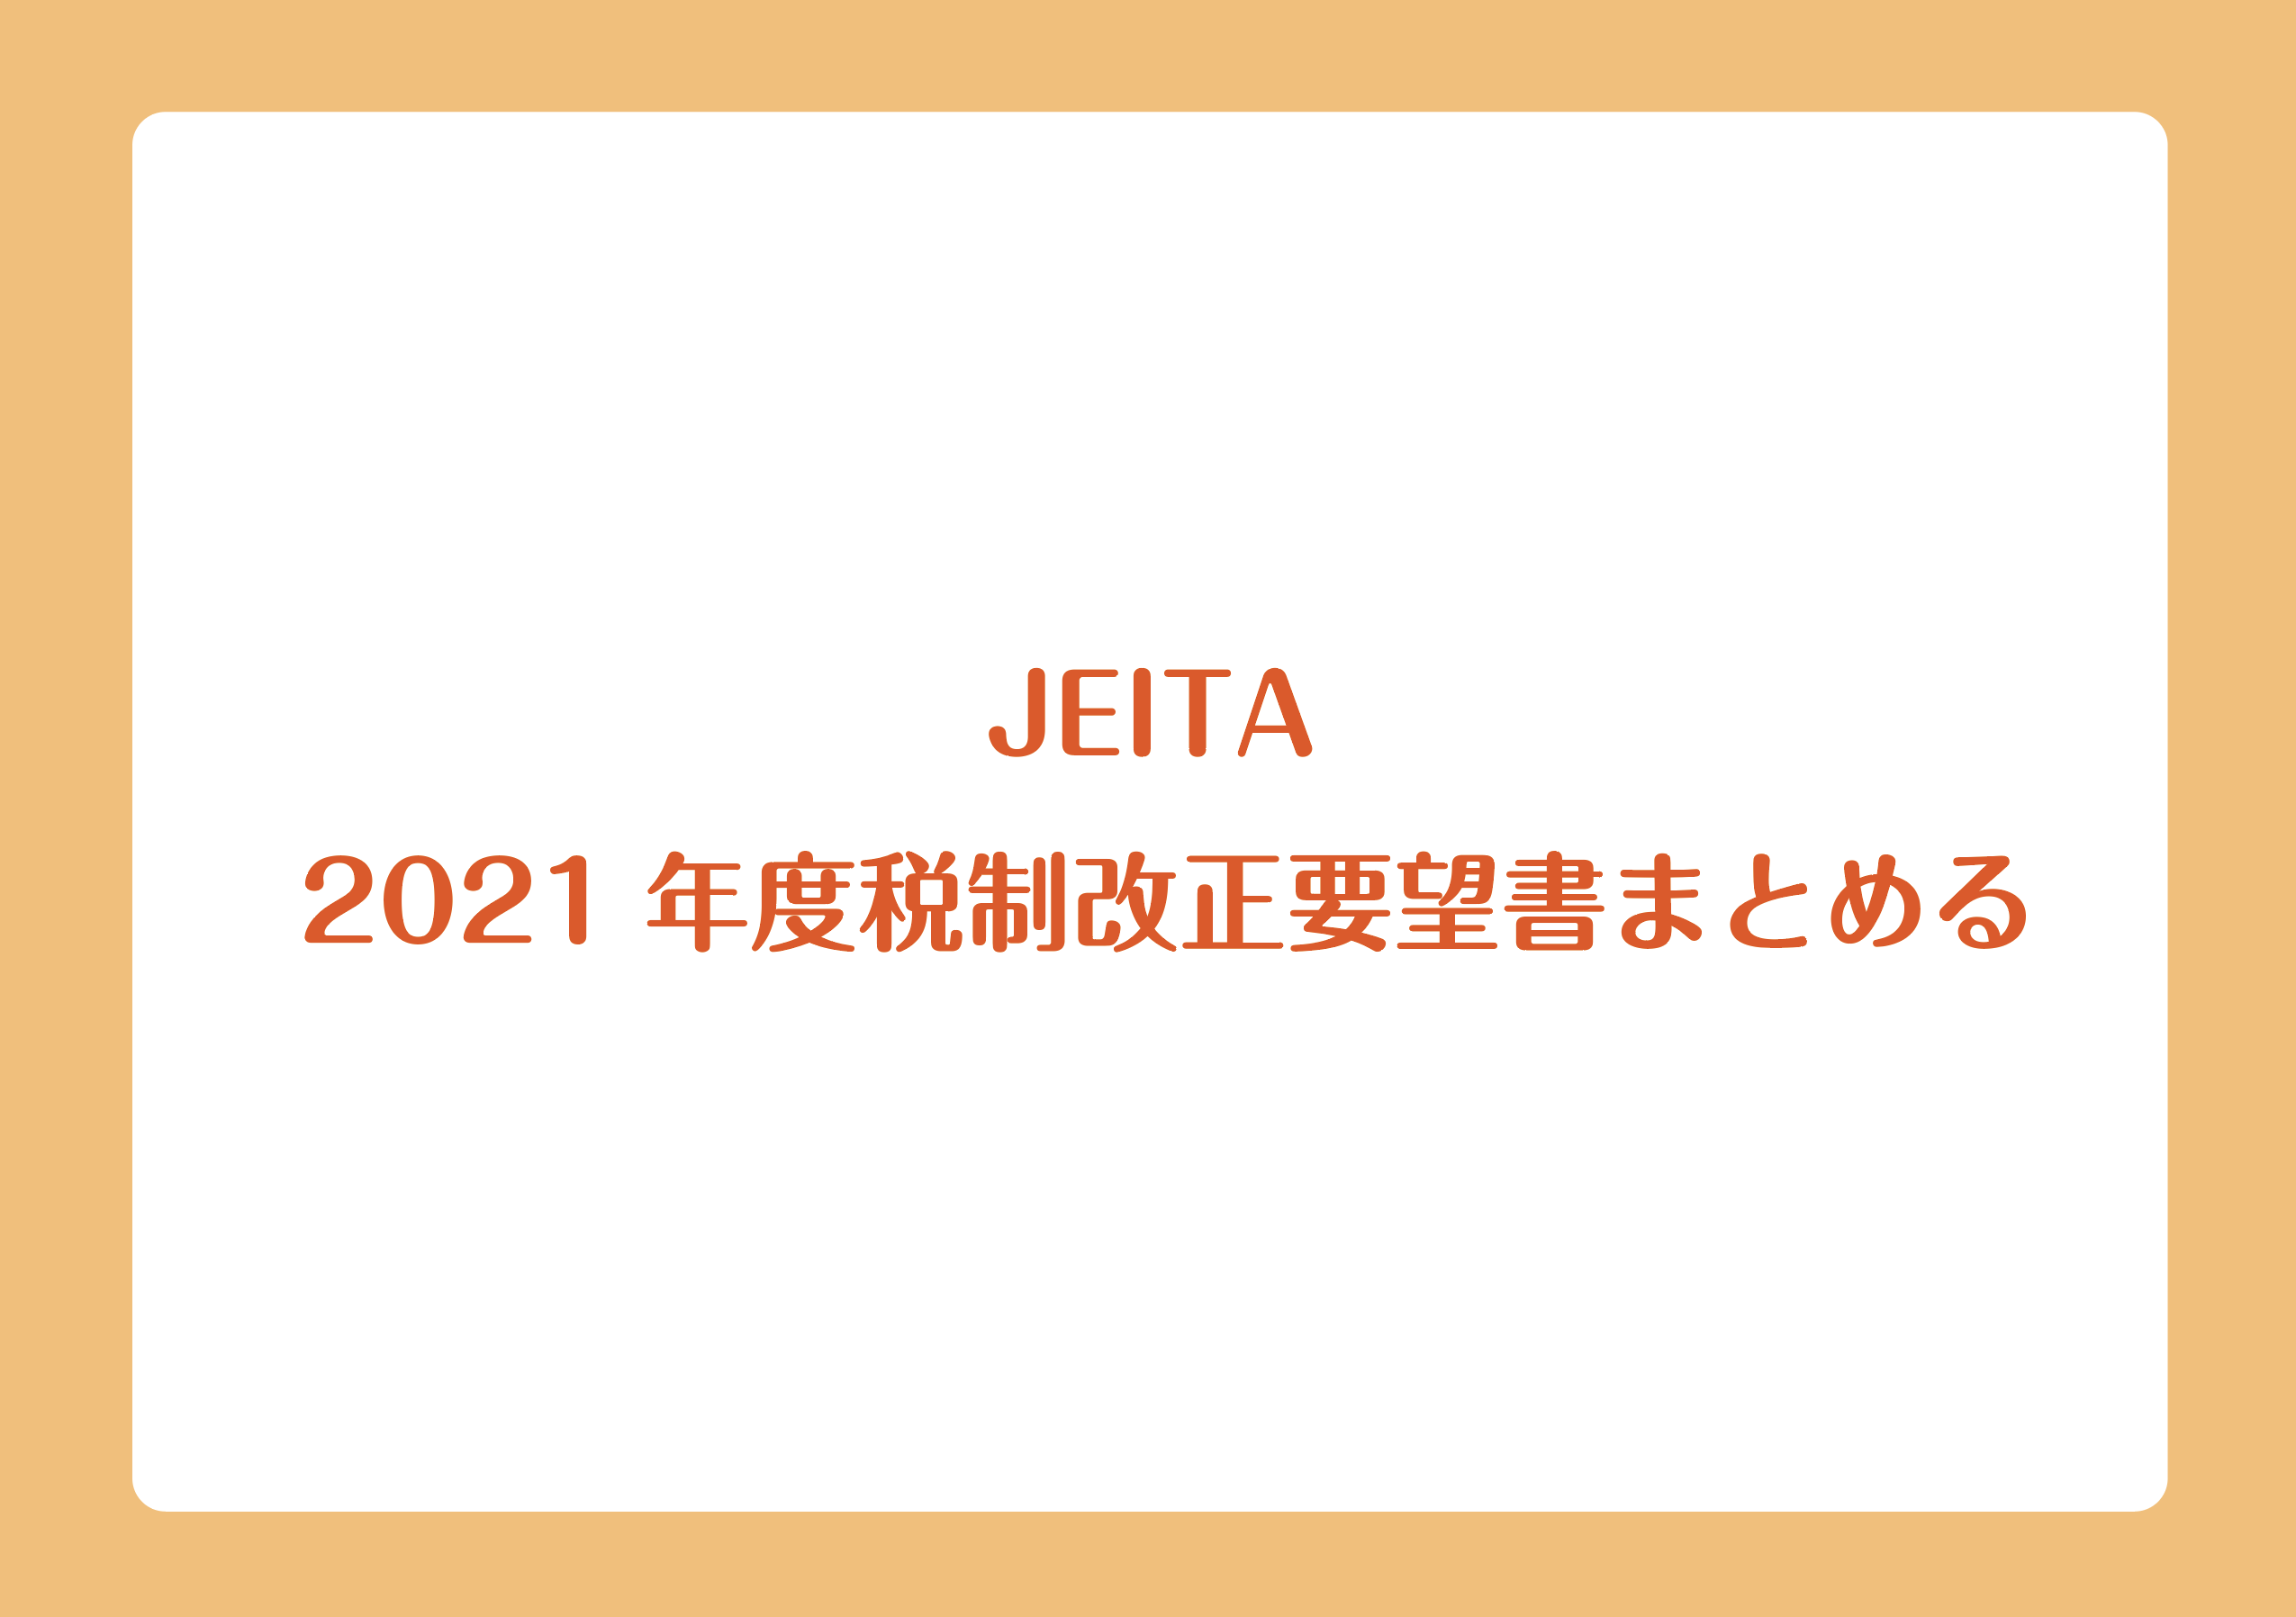 JEITA 2021年度税制改正要望書まとめるの画像